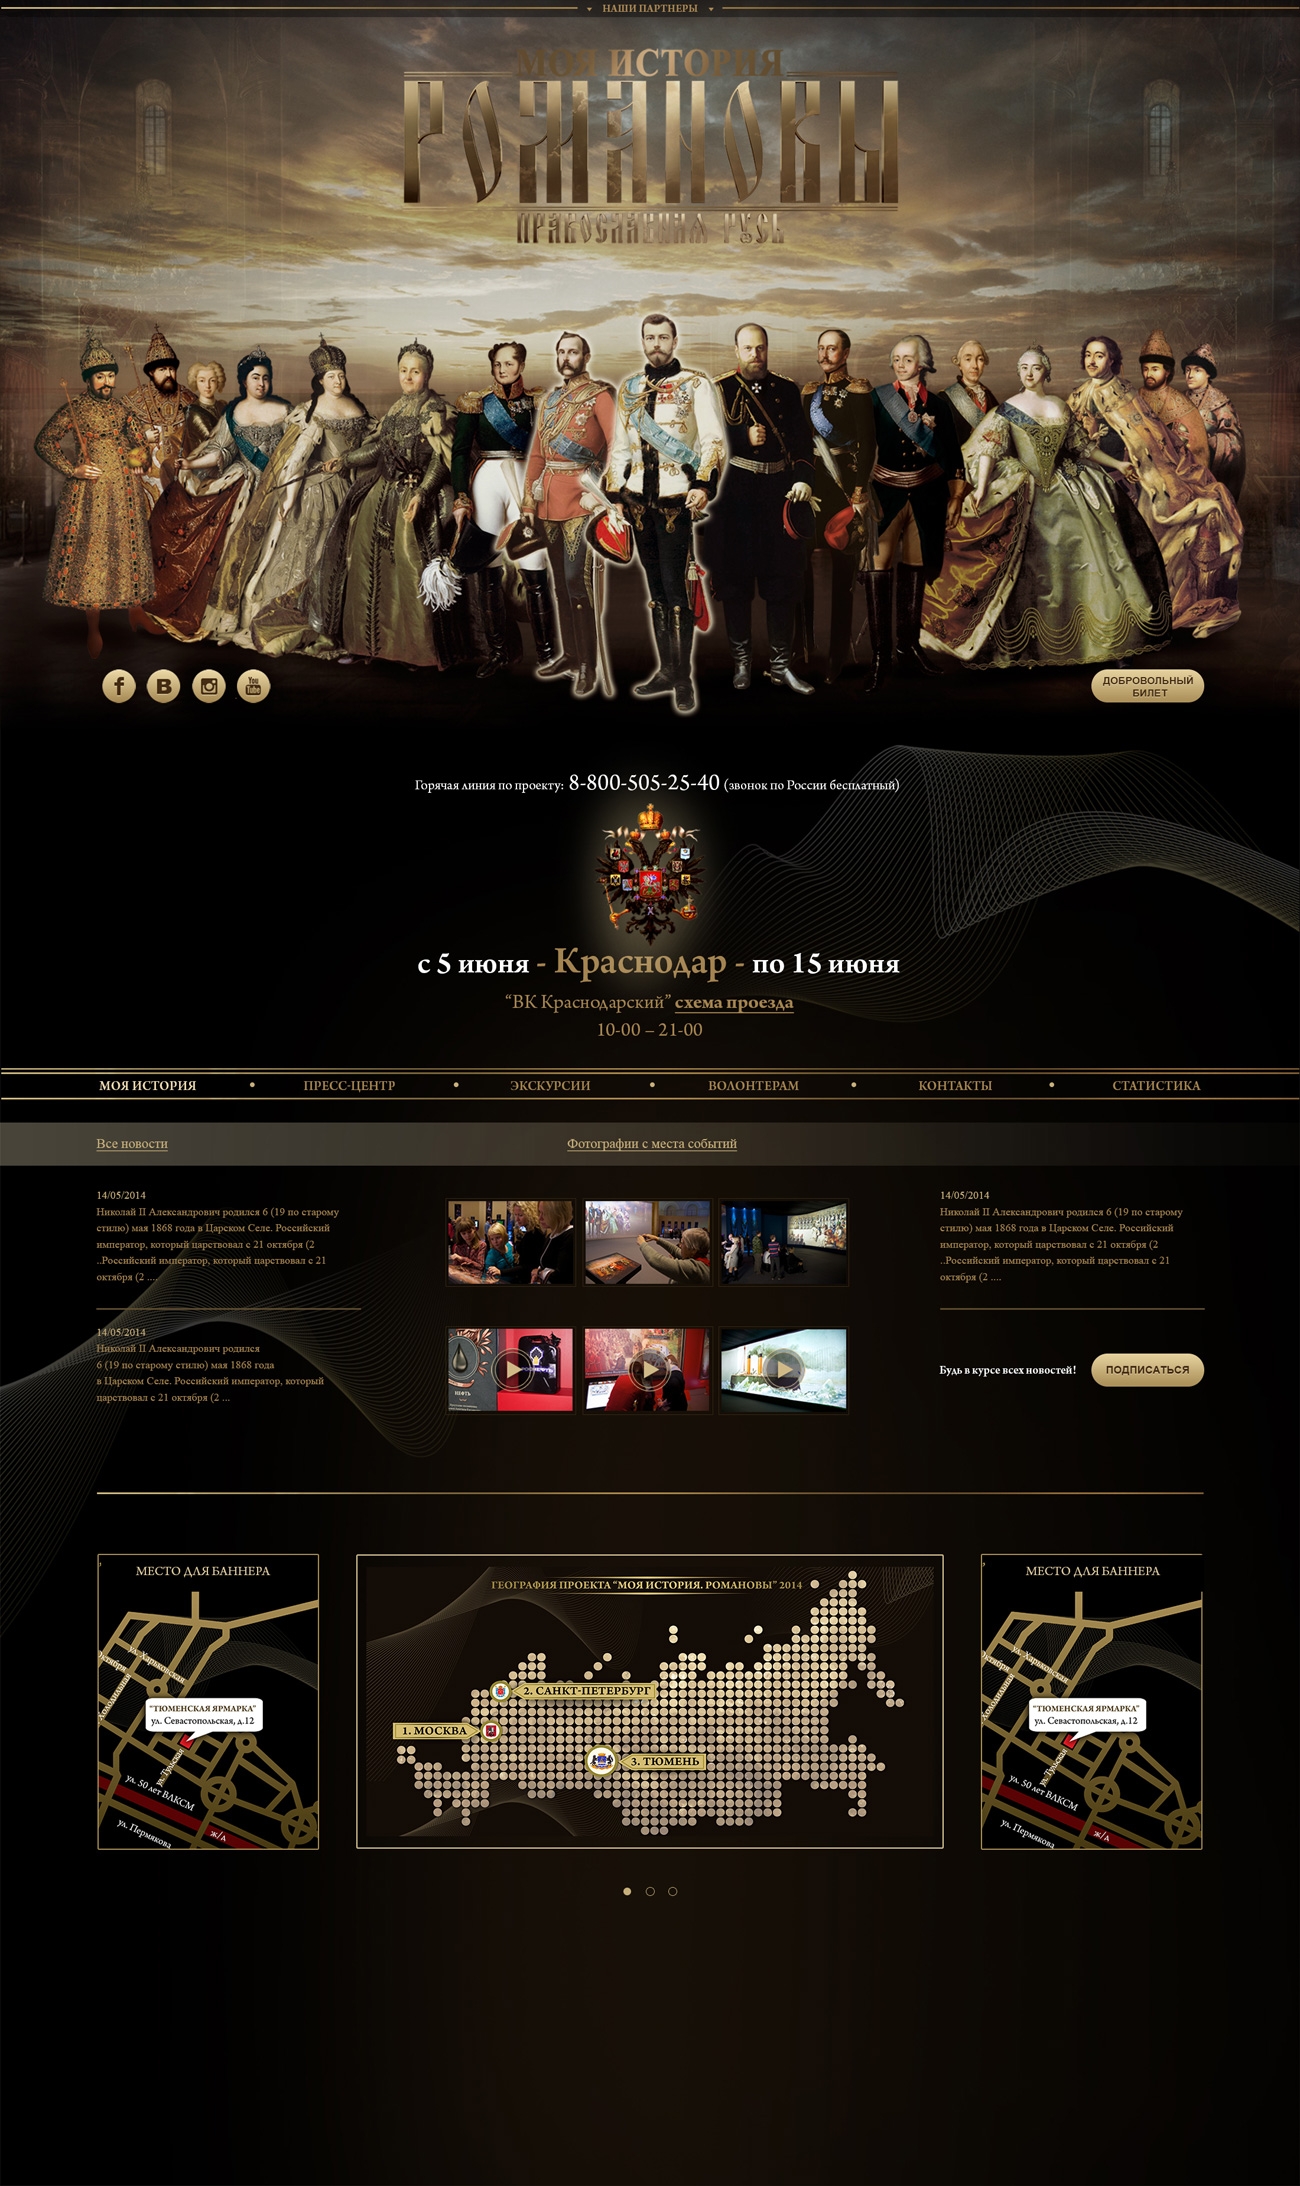 Шаблон главной страницы сайта выставки дома Романовых